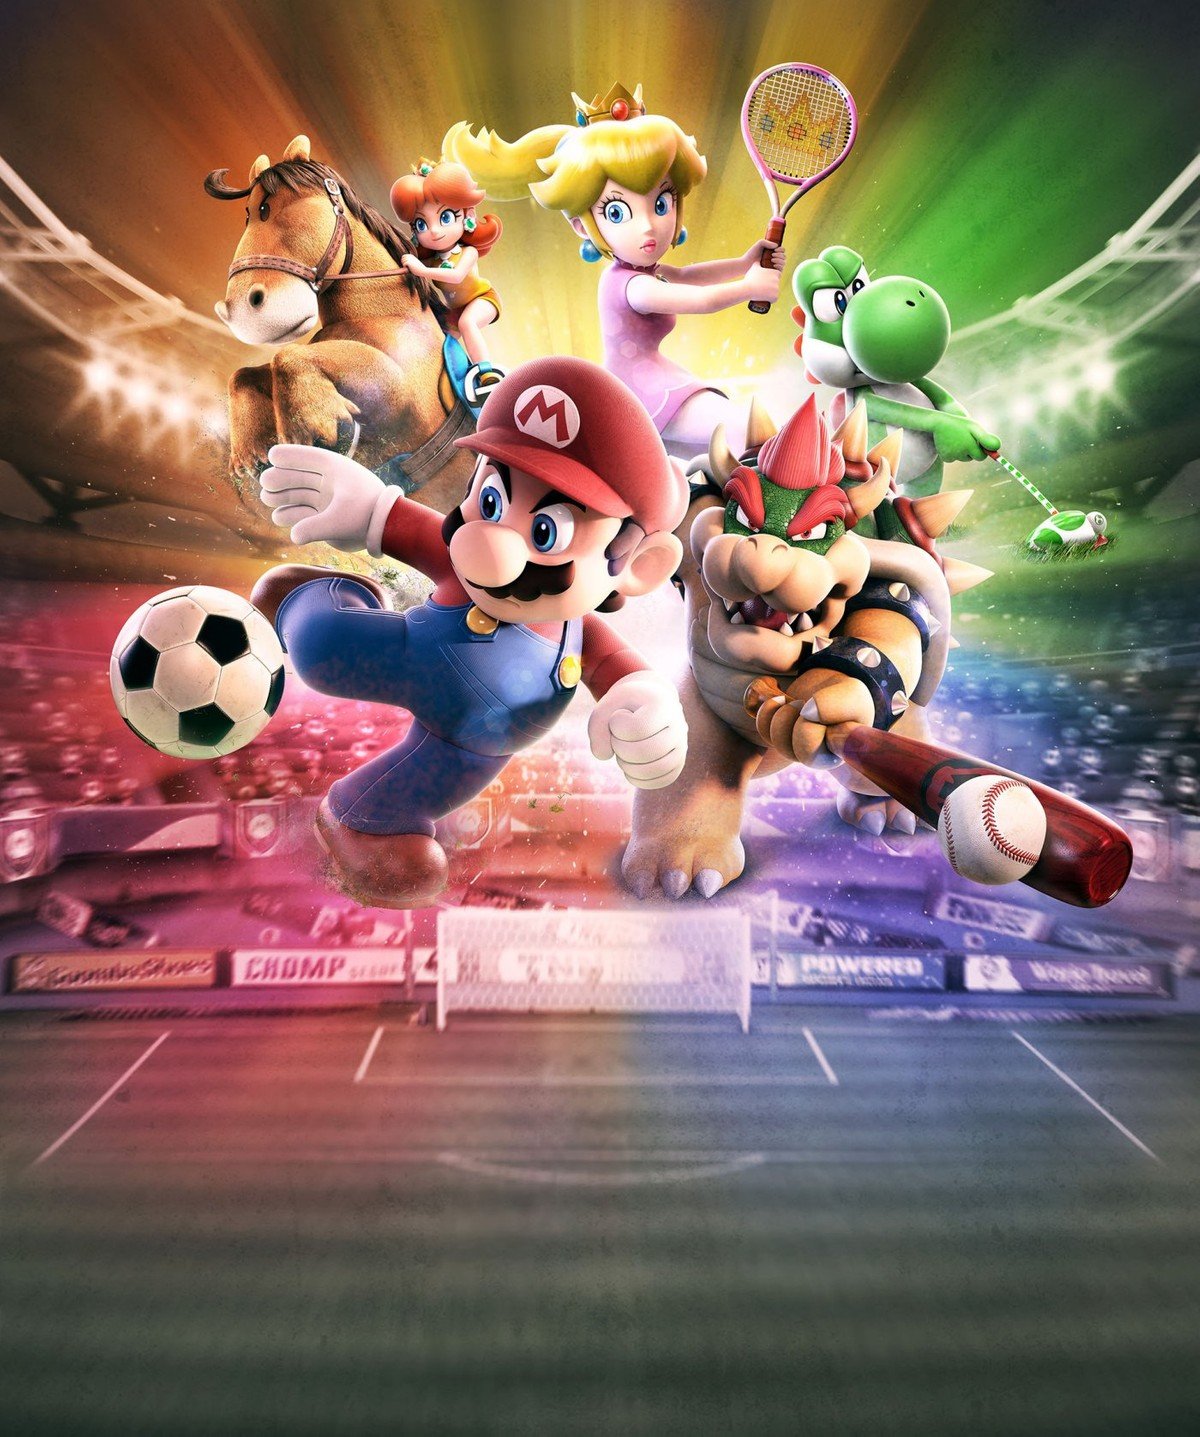 Mario Sports Superstars annuncio ufficiale e nuove immagini HDblog.it